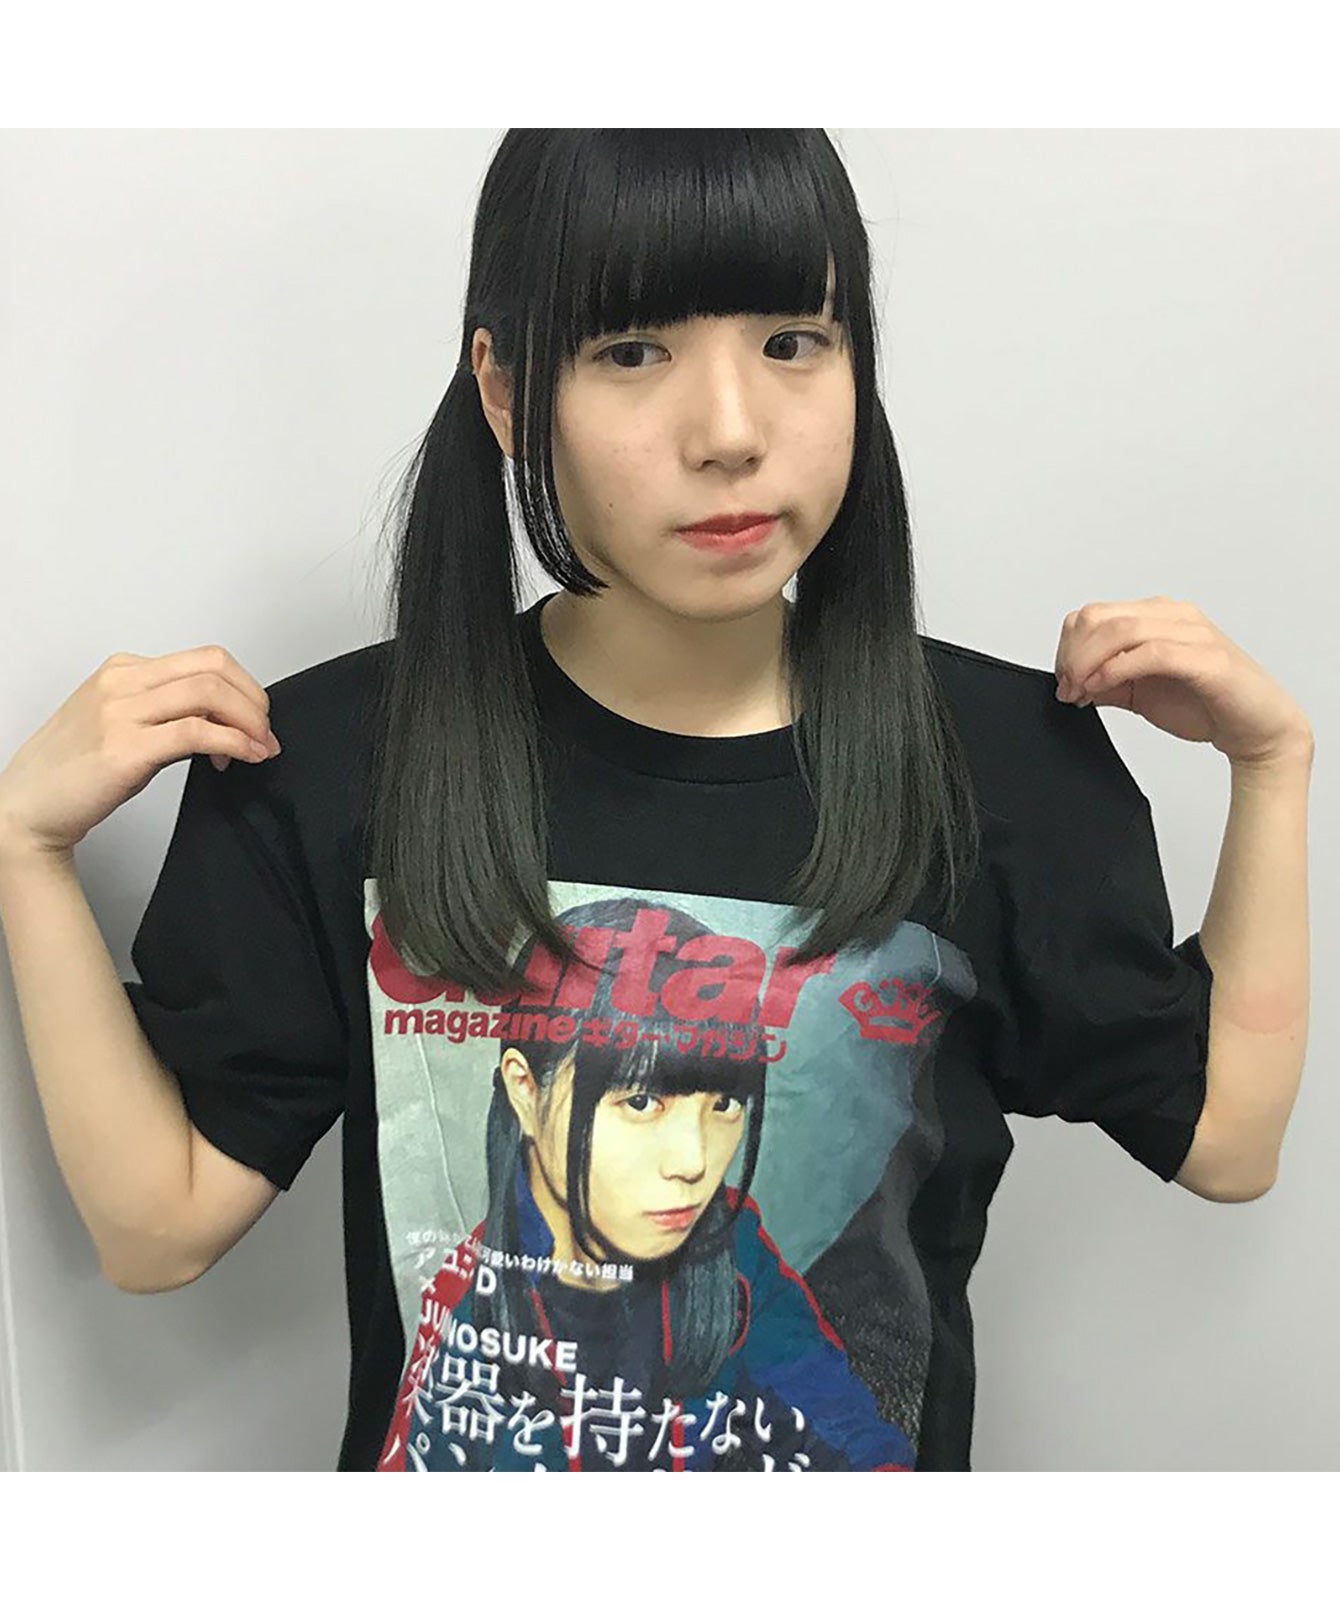 【文字入れ可】BiSH アユニ・D降臨キーボード・マガジン表紙風Tシャツ